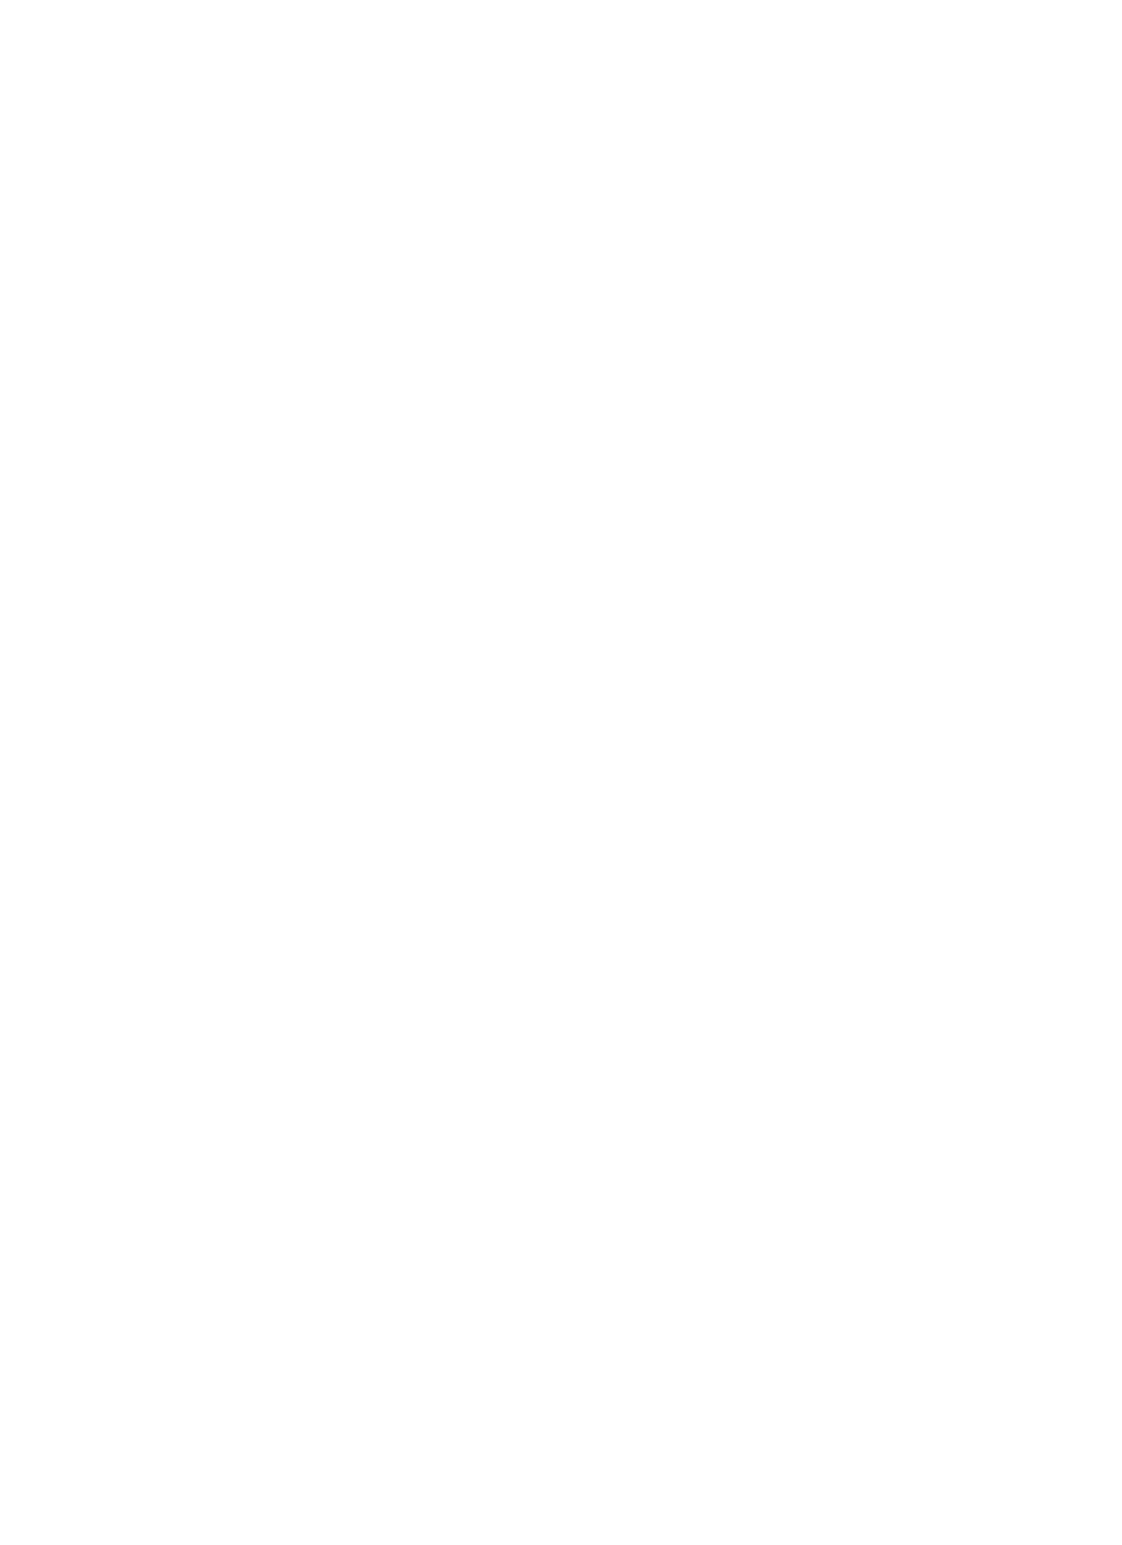 Sky Harbour Group logo pour fonds sombres (PNG transparent)